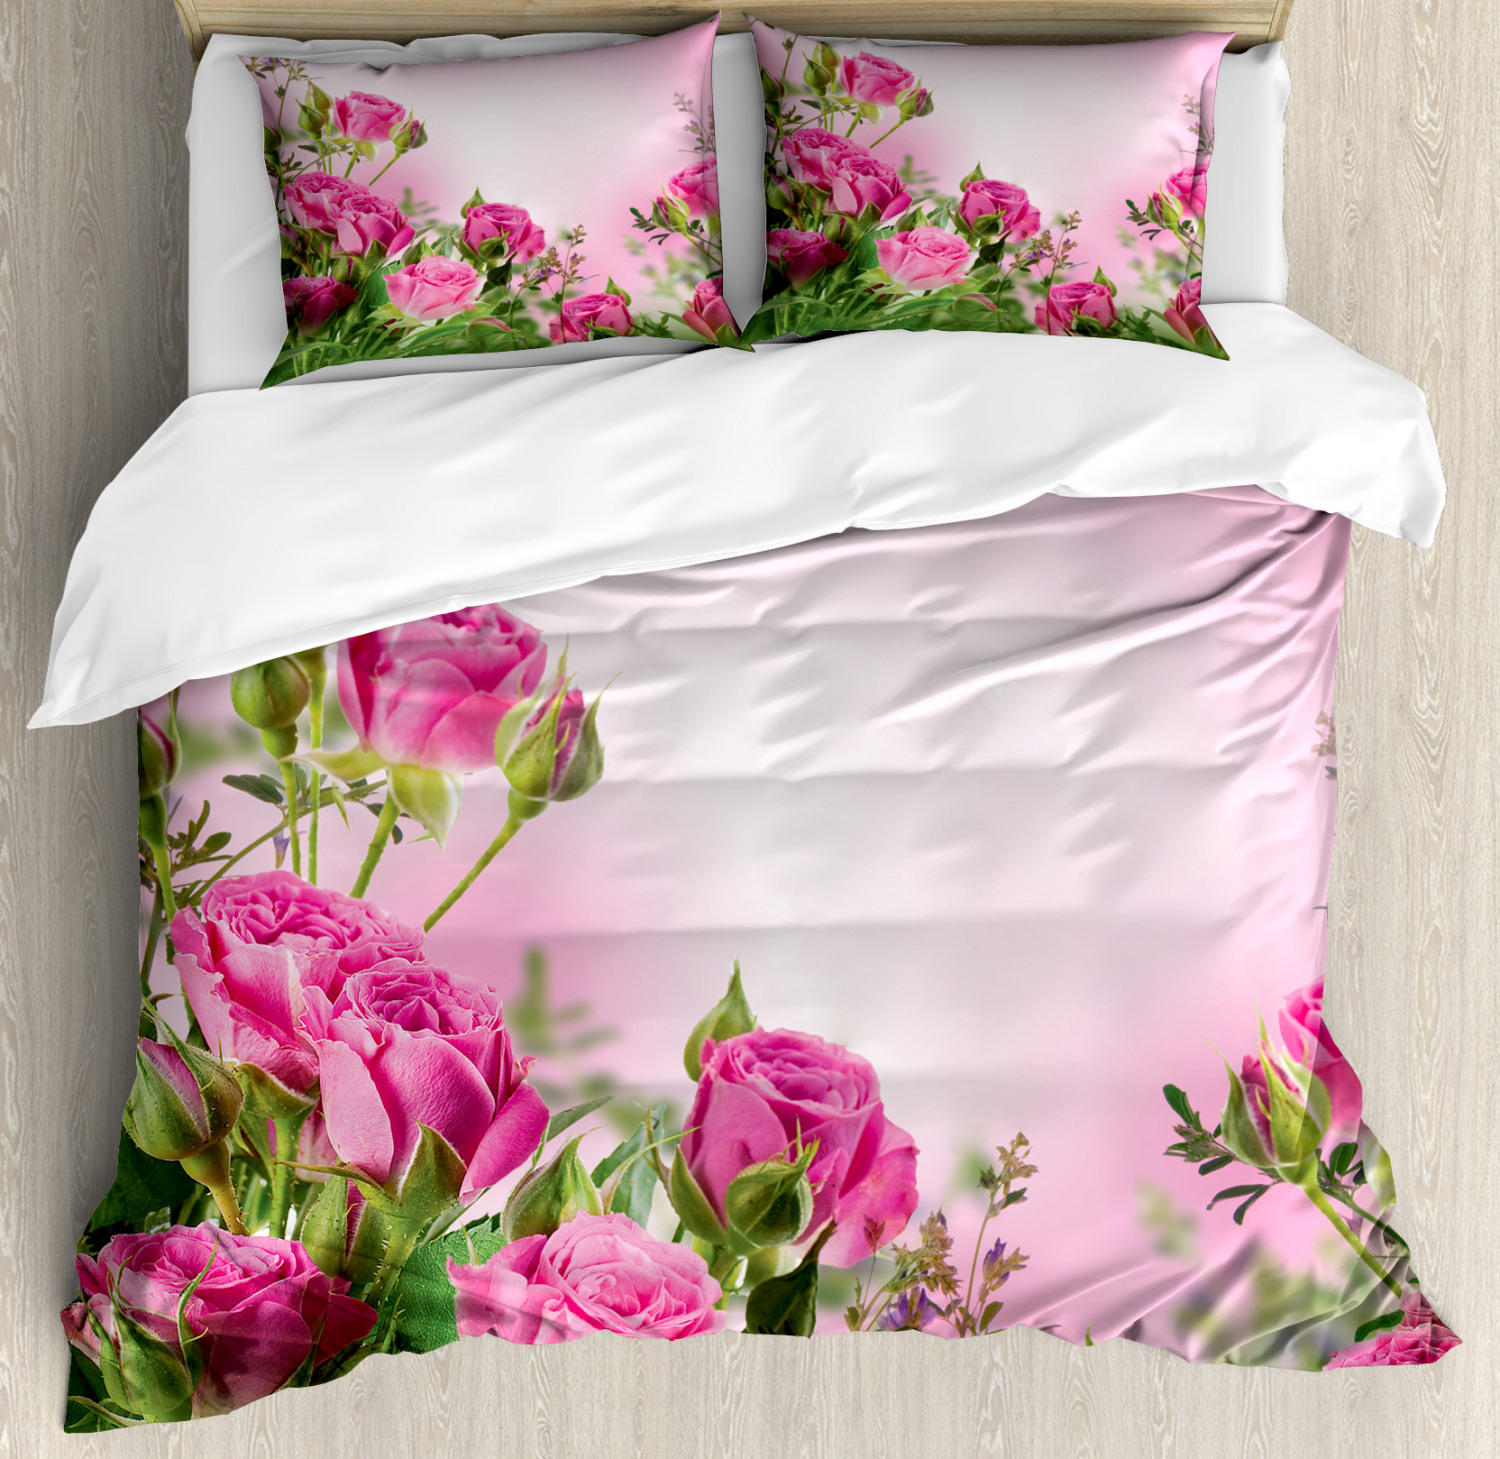 Flower Duvet Cover Set with Pillow Shams Spring Season Roses Buds Print ...